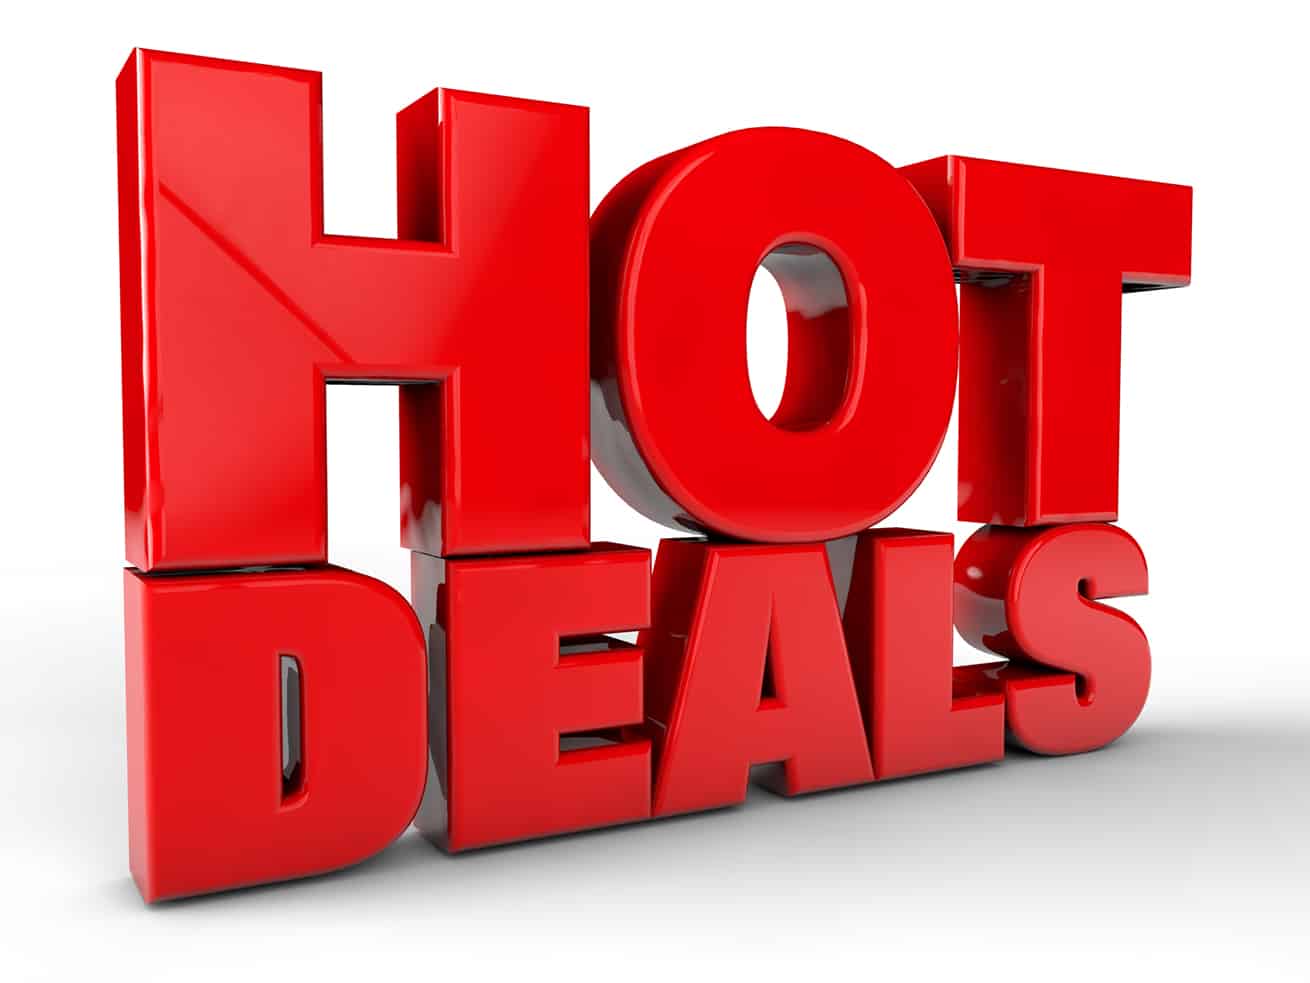 hot deals banner